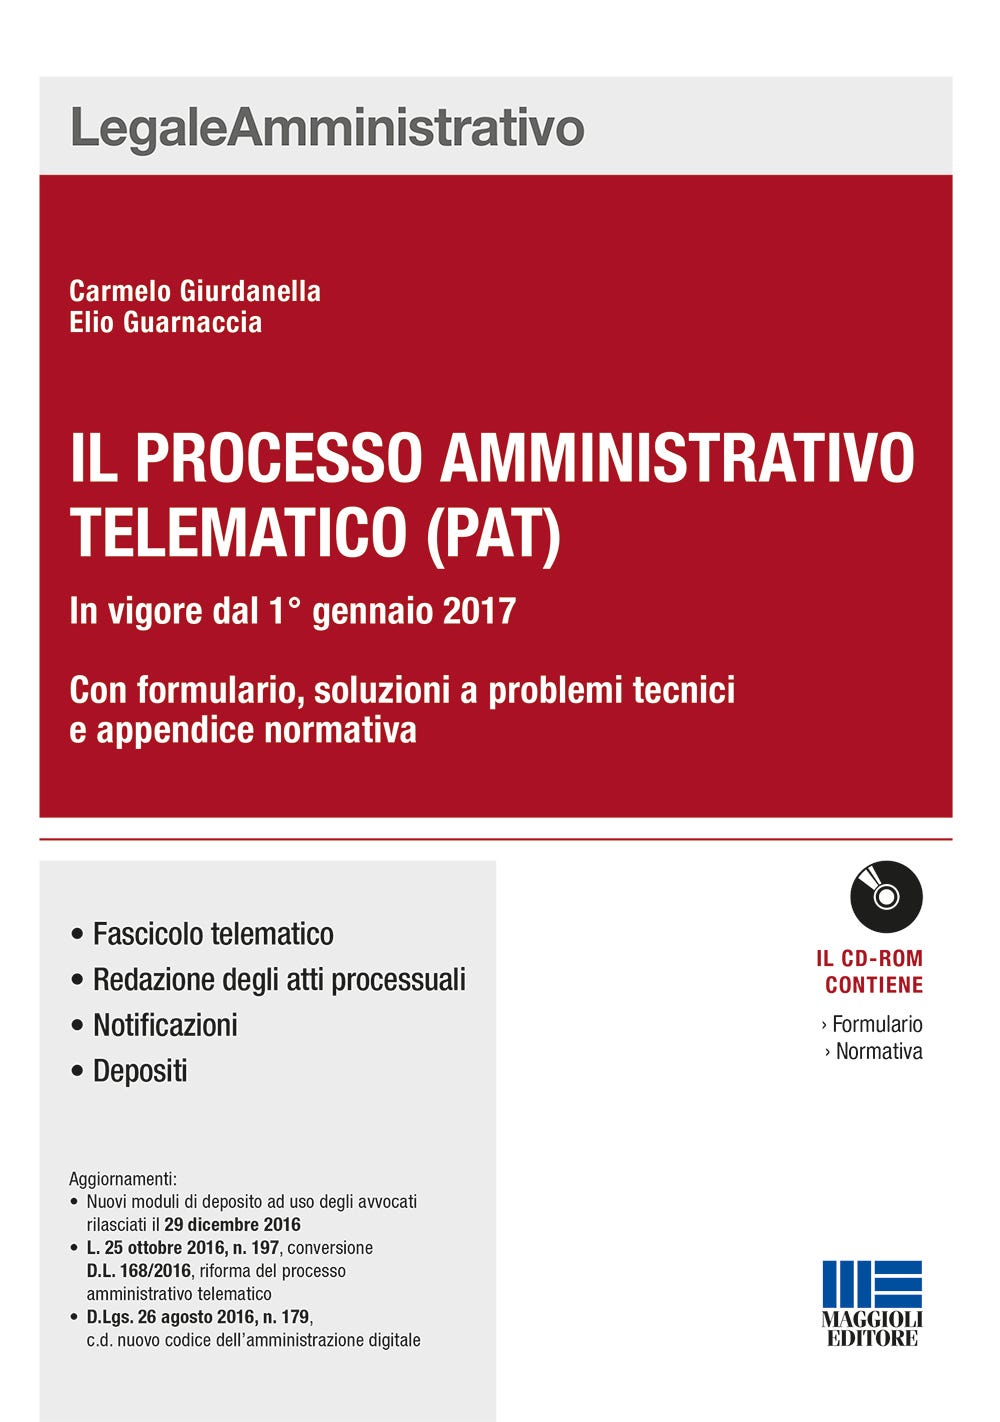 Il processo amministrativo telematico (PAT)